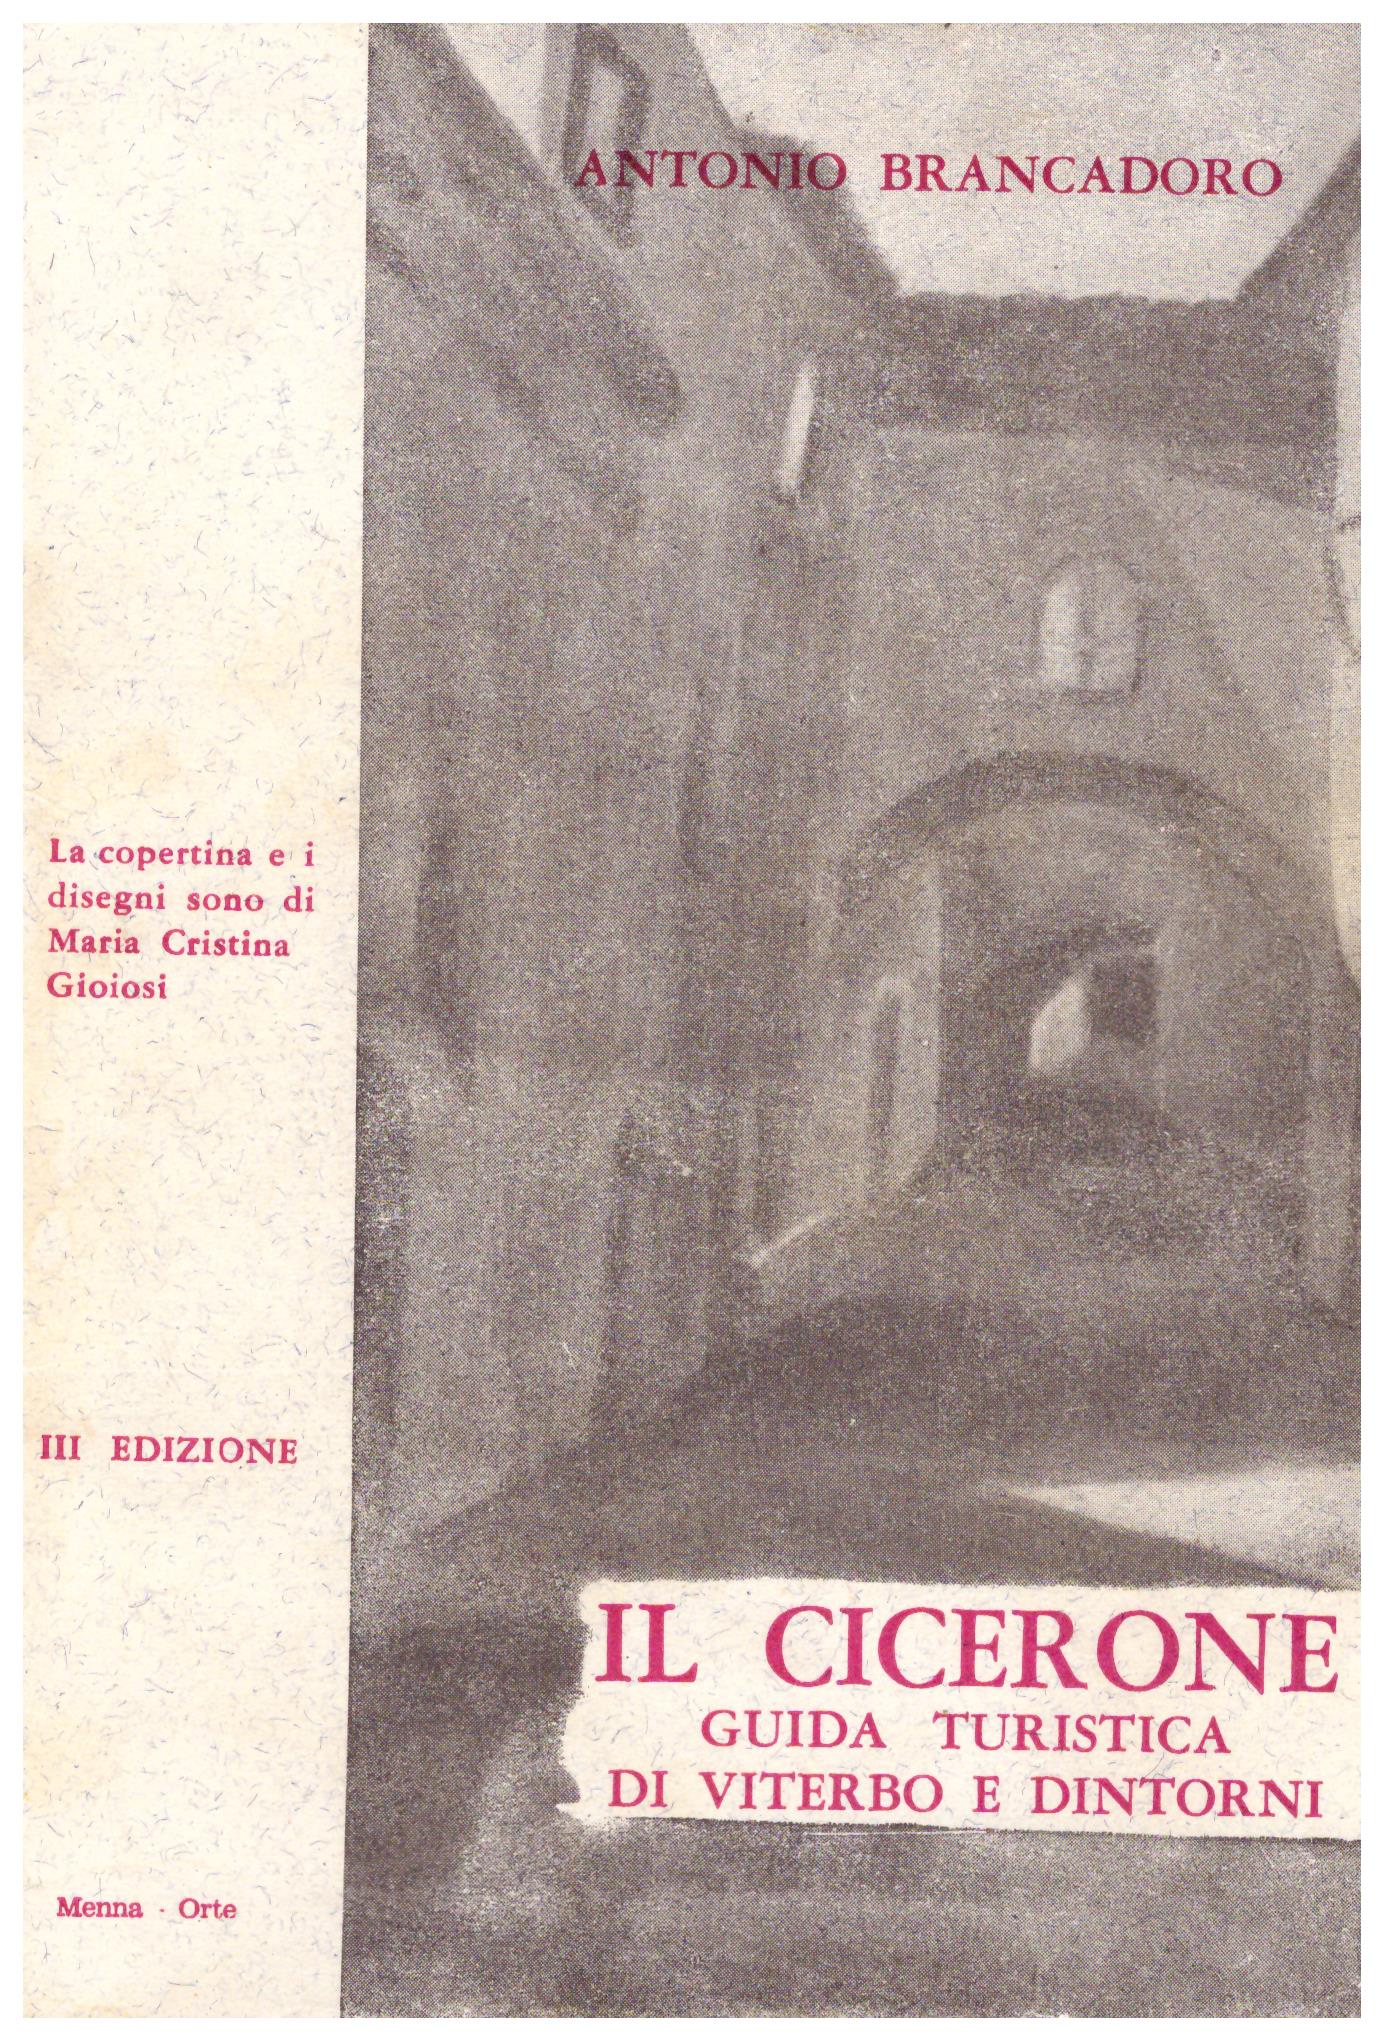 Titolo: Il Cicerone, Guida turistica di Viterbo e dintorni    Autore:Antonio Brancadoro    Editore: Tipografia Menna Orte